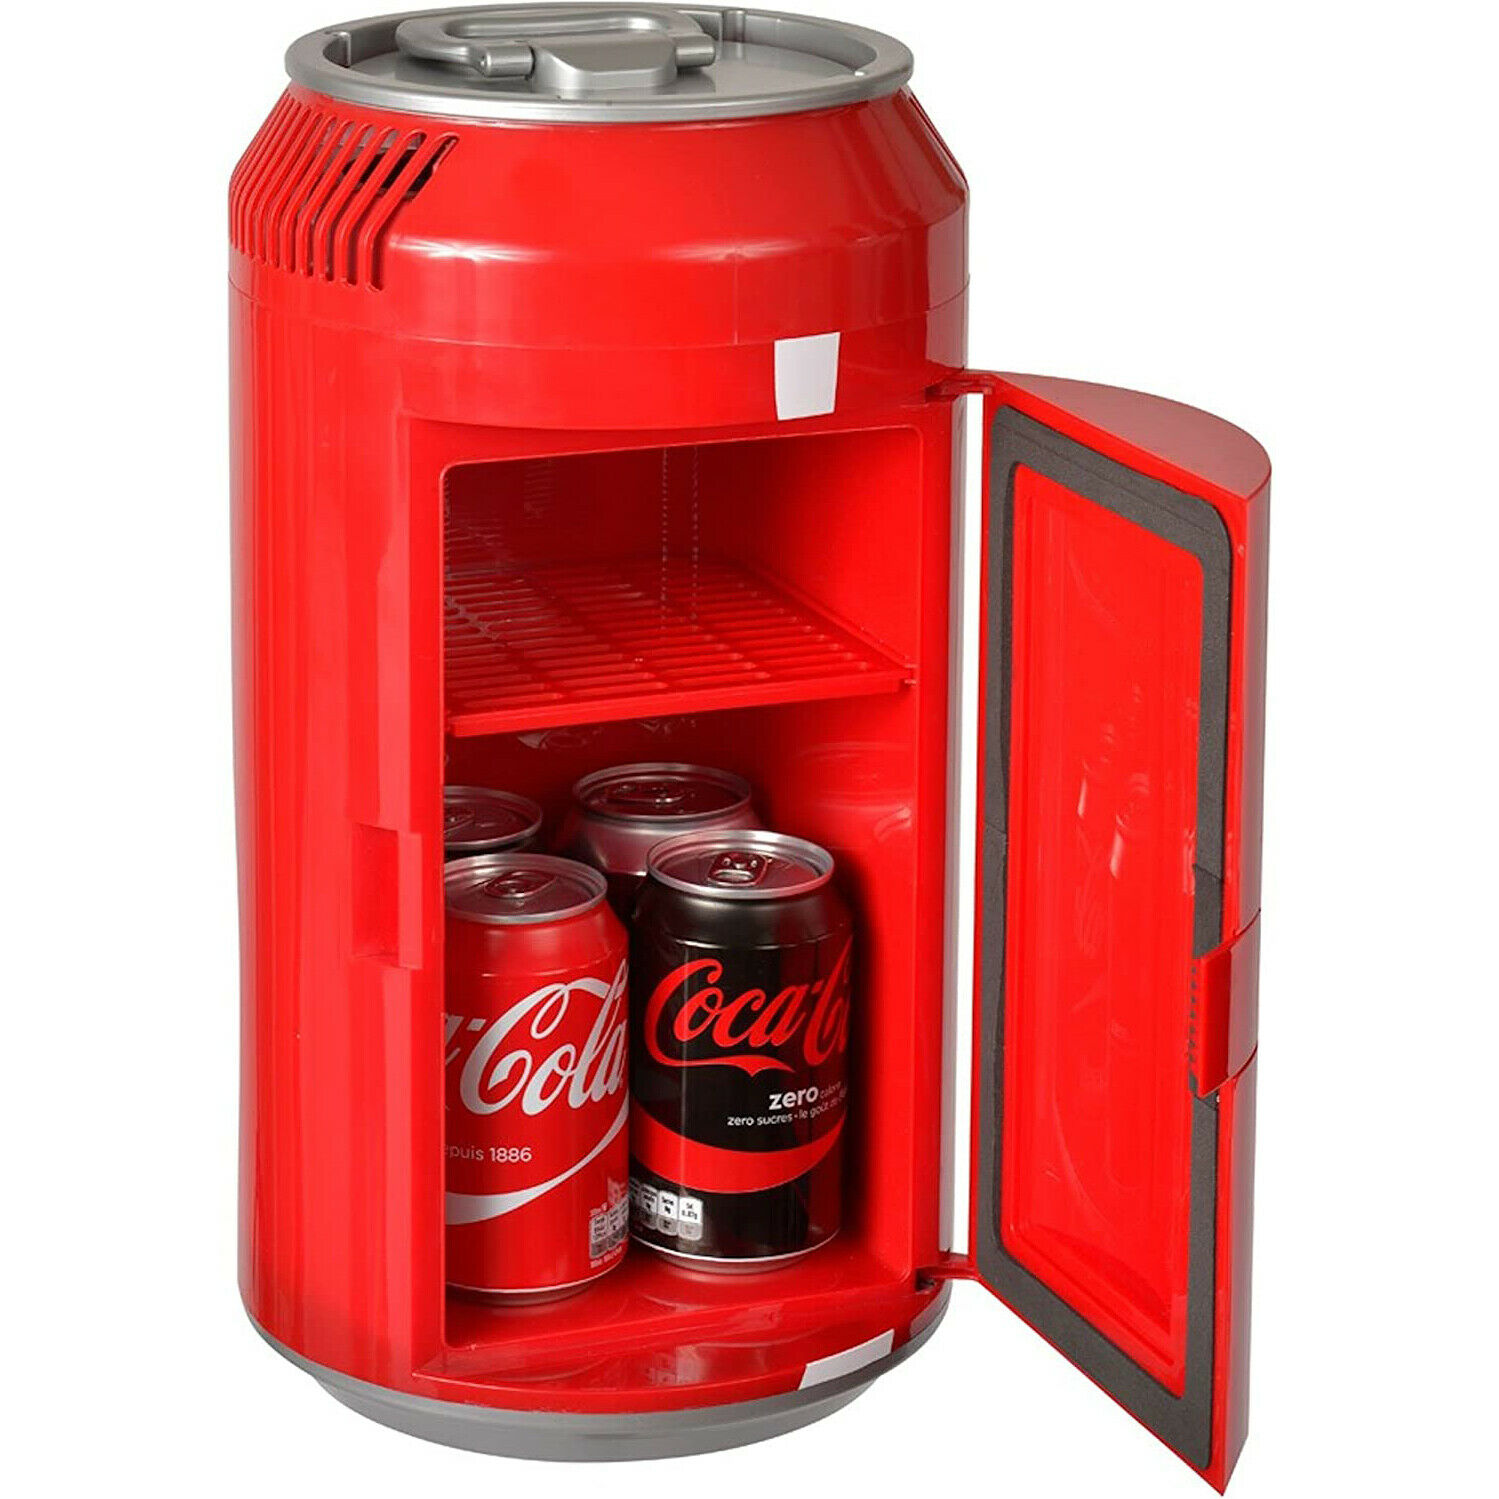 Cc06-g Mini Coca Cola Can Cooler